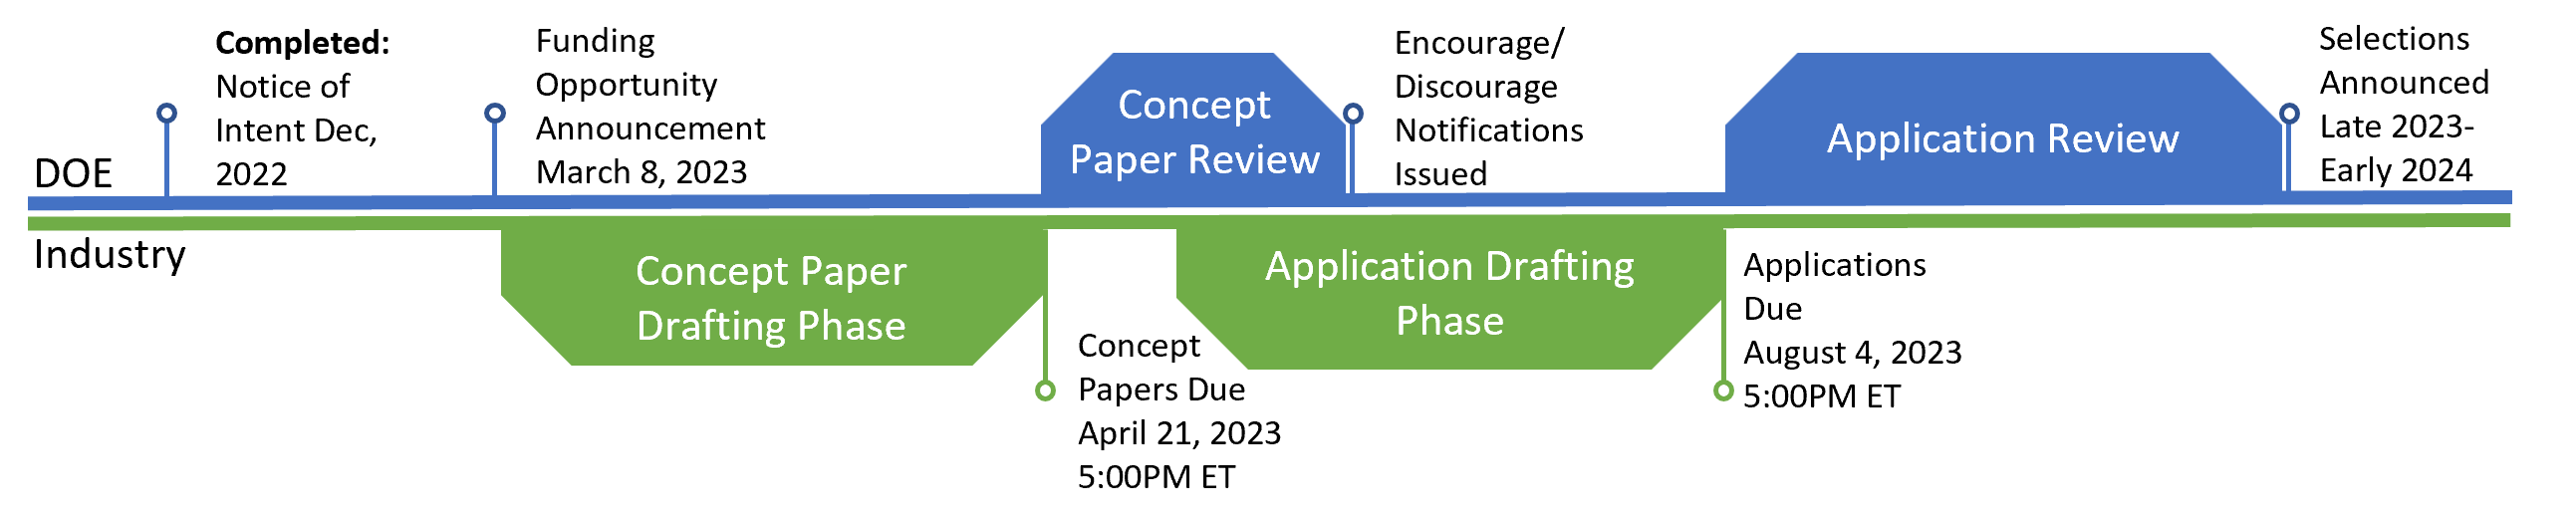 Concept Paper Timeline